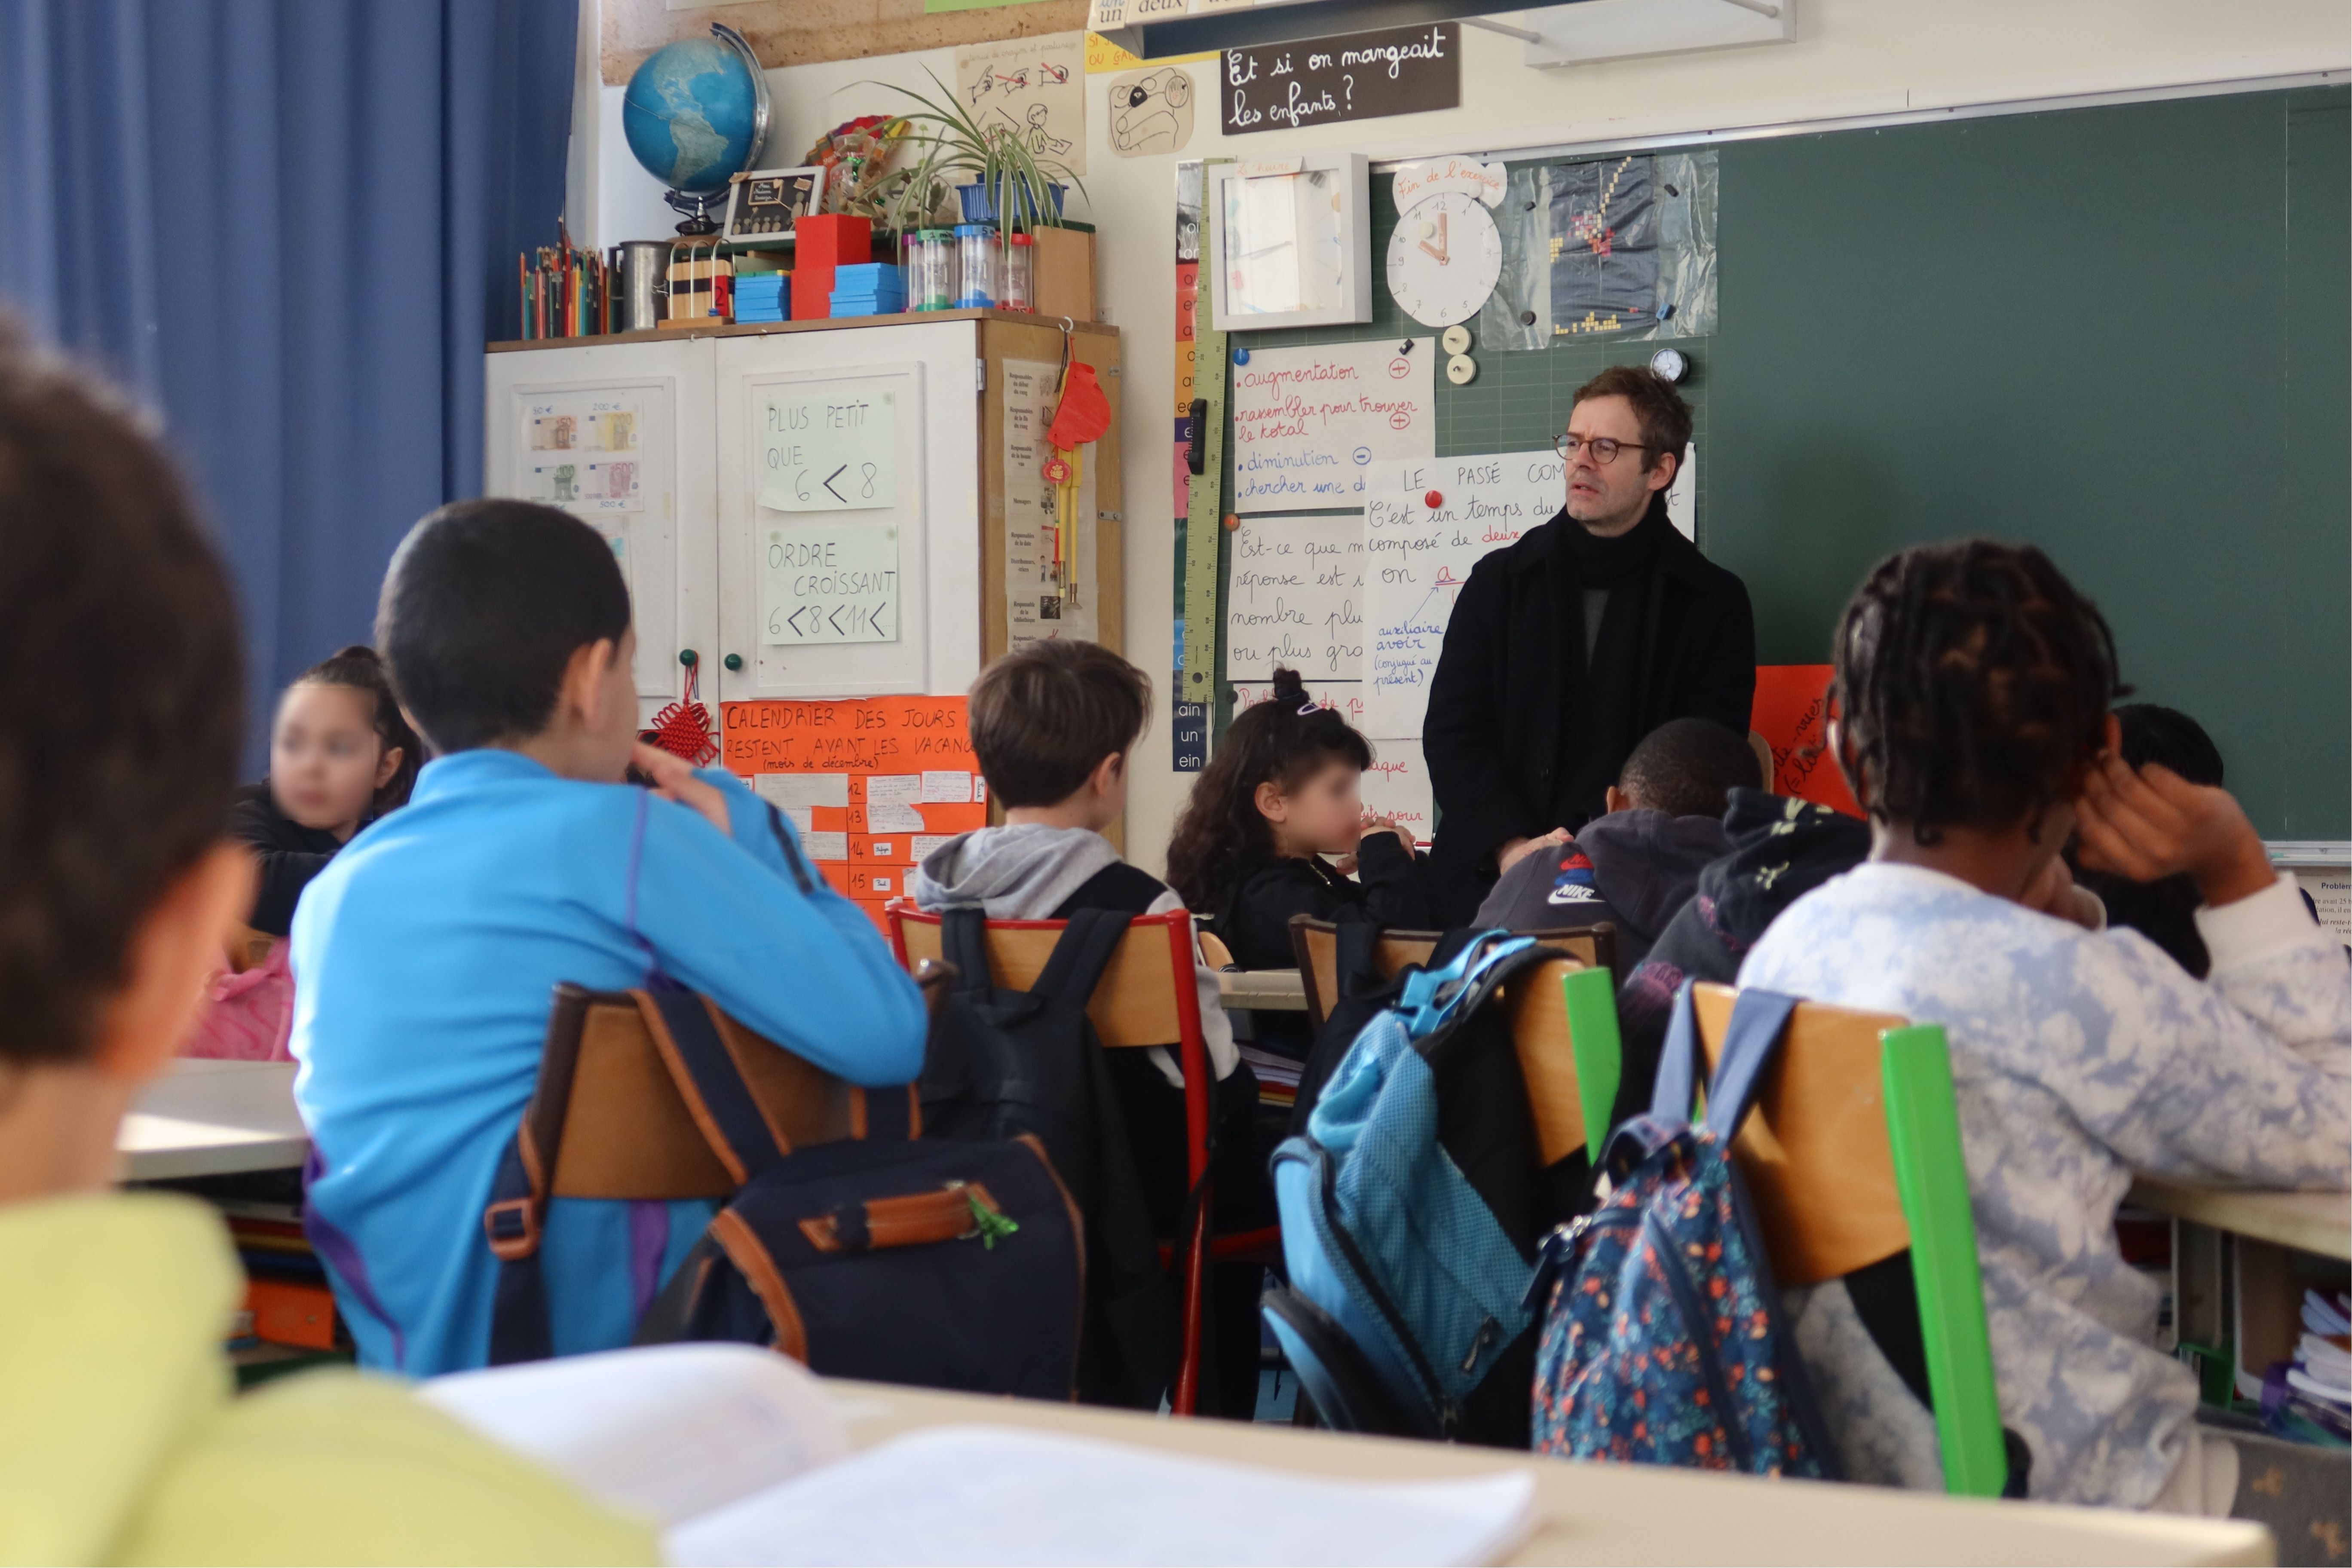 Les élèves sont assis à leur place en classe. Il écoute Armand Jalut qui leur parle.